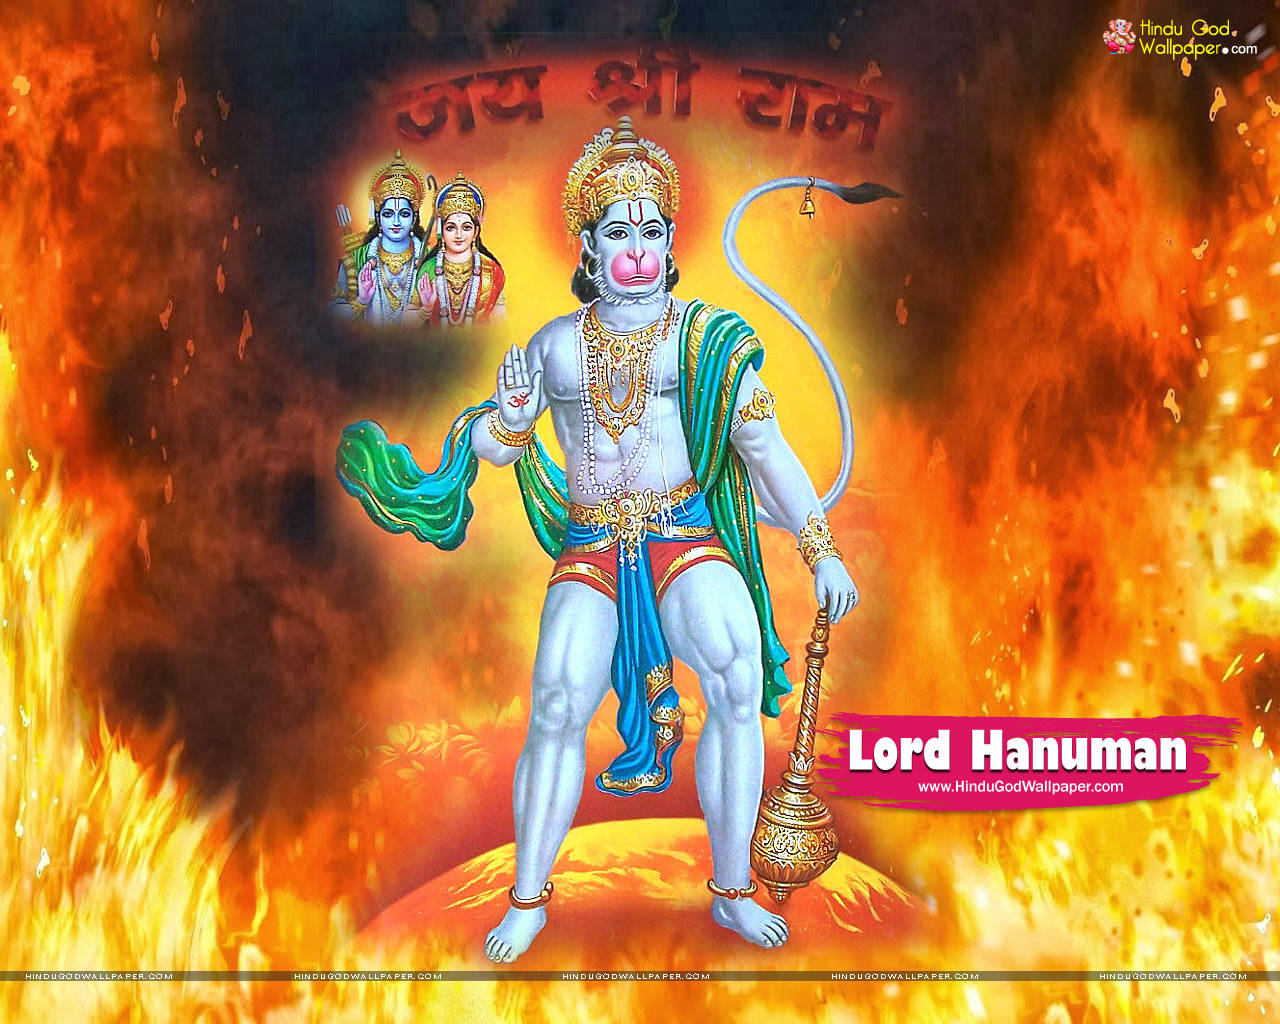 Vred Hanuman omgivet af ild Wallpaper